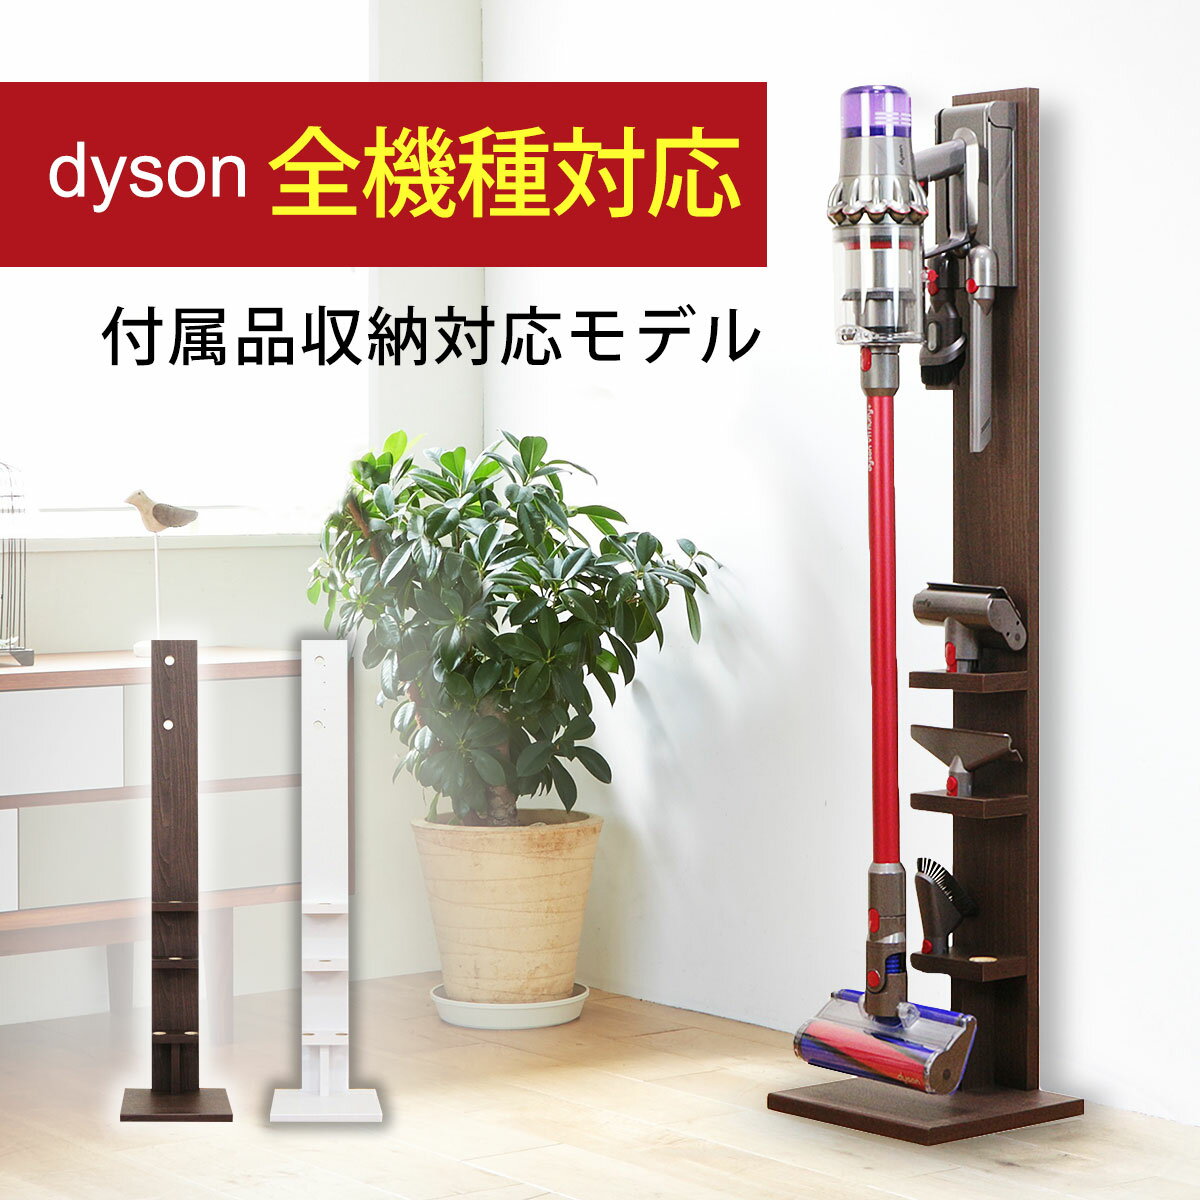 【送料無料】ダイソン コードレスクリーナー 壁寄せ 充電スタンド付属品収納モデル 日本製 Dyson V15 V12 Micro Digital Slim V11 V10 V8 V7 V6 DC74 DC62 DC45 DC35対応